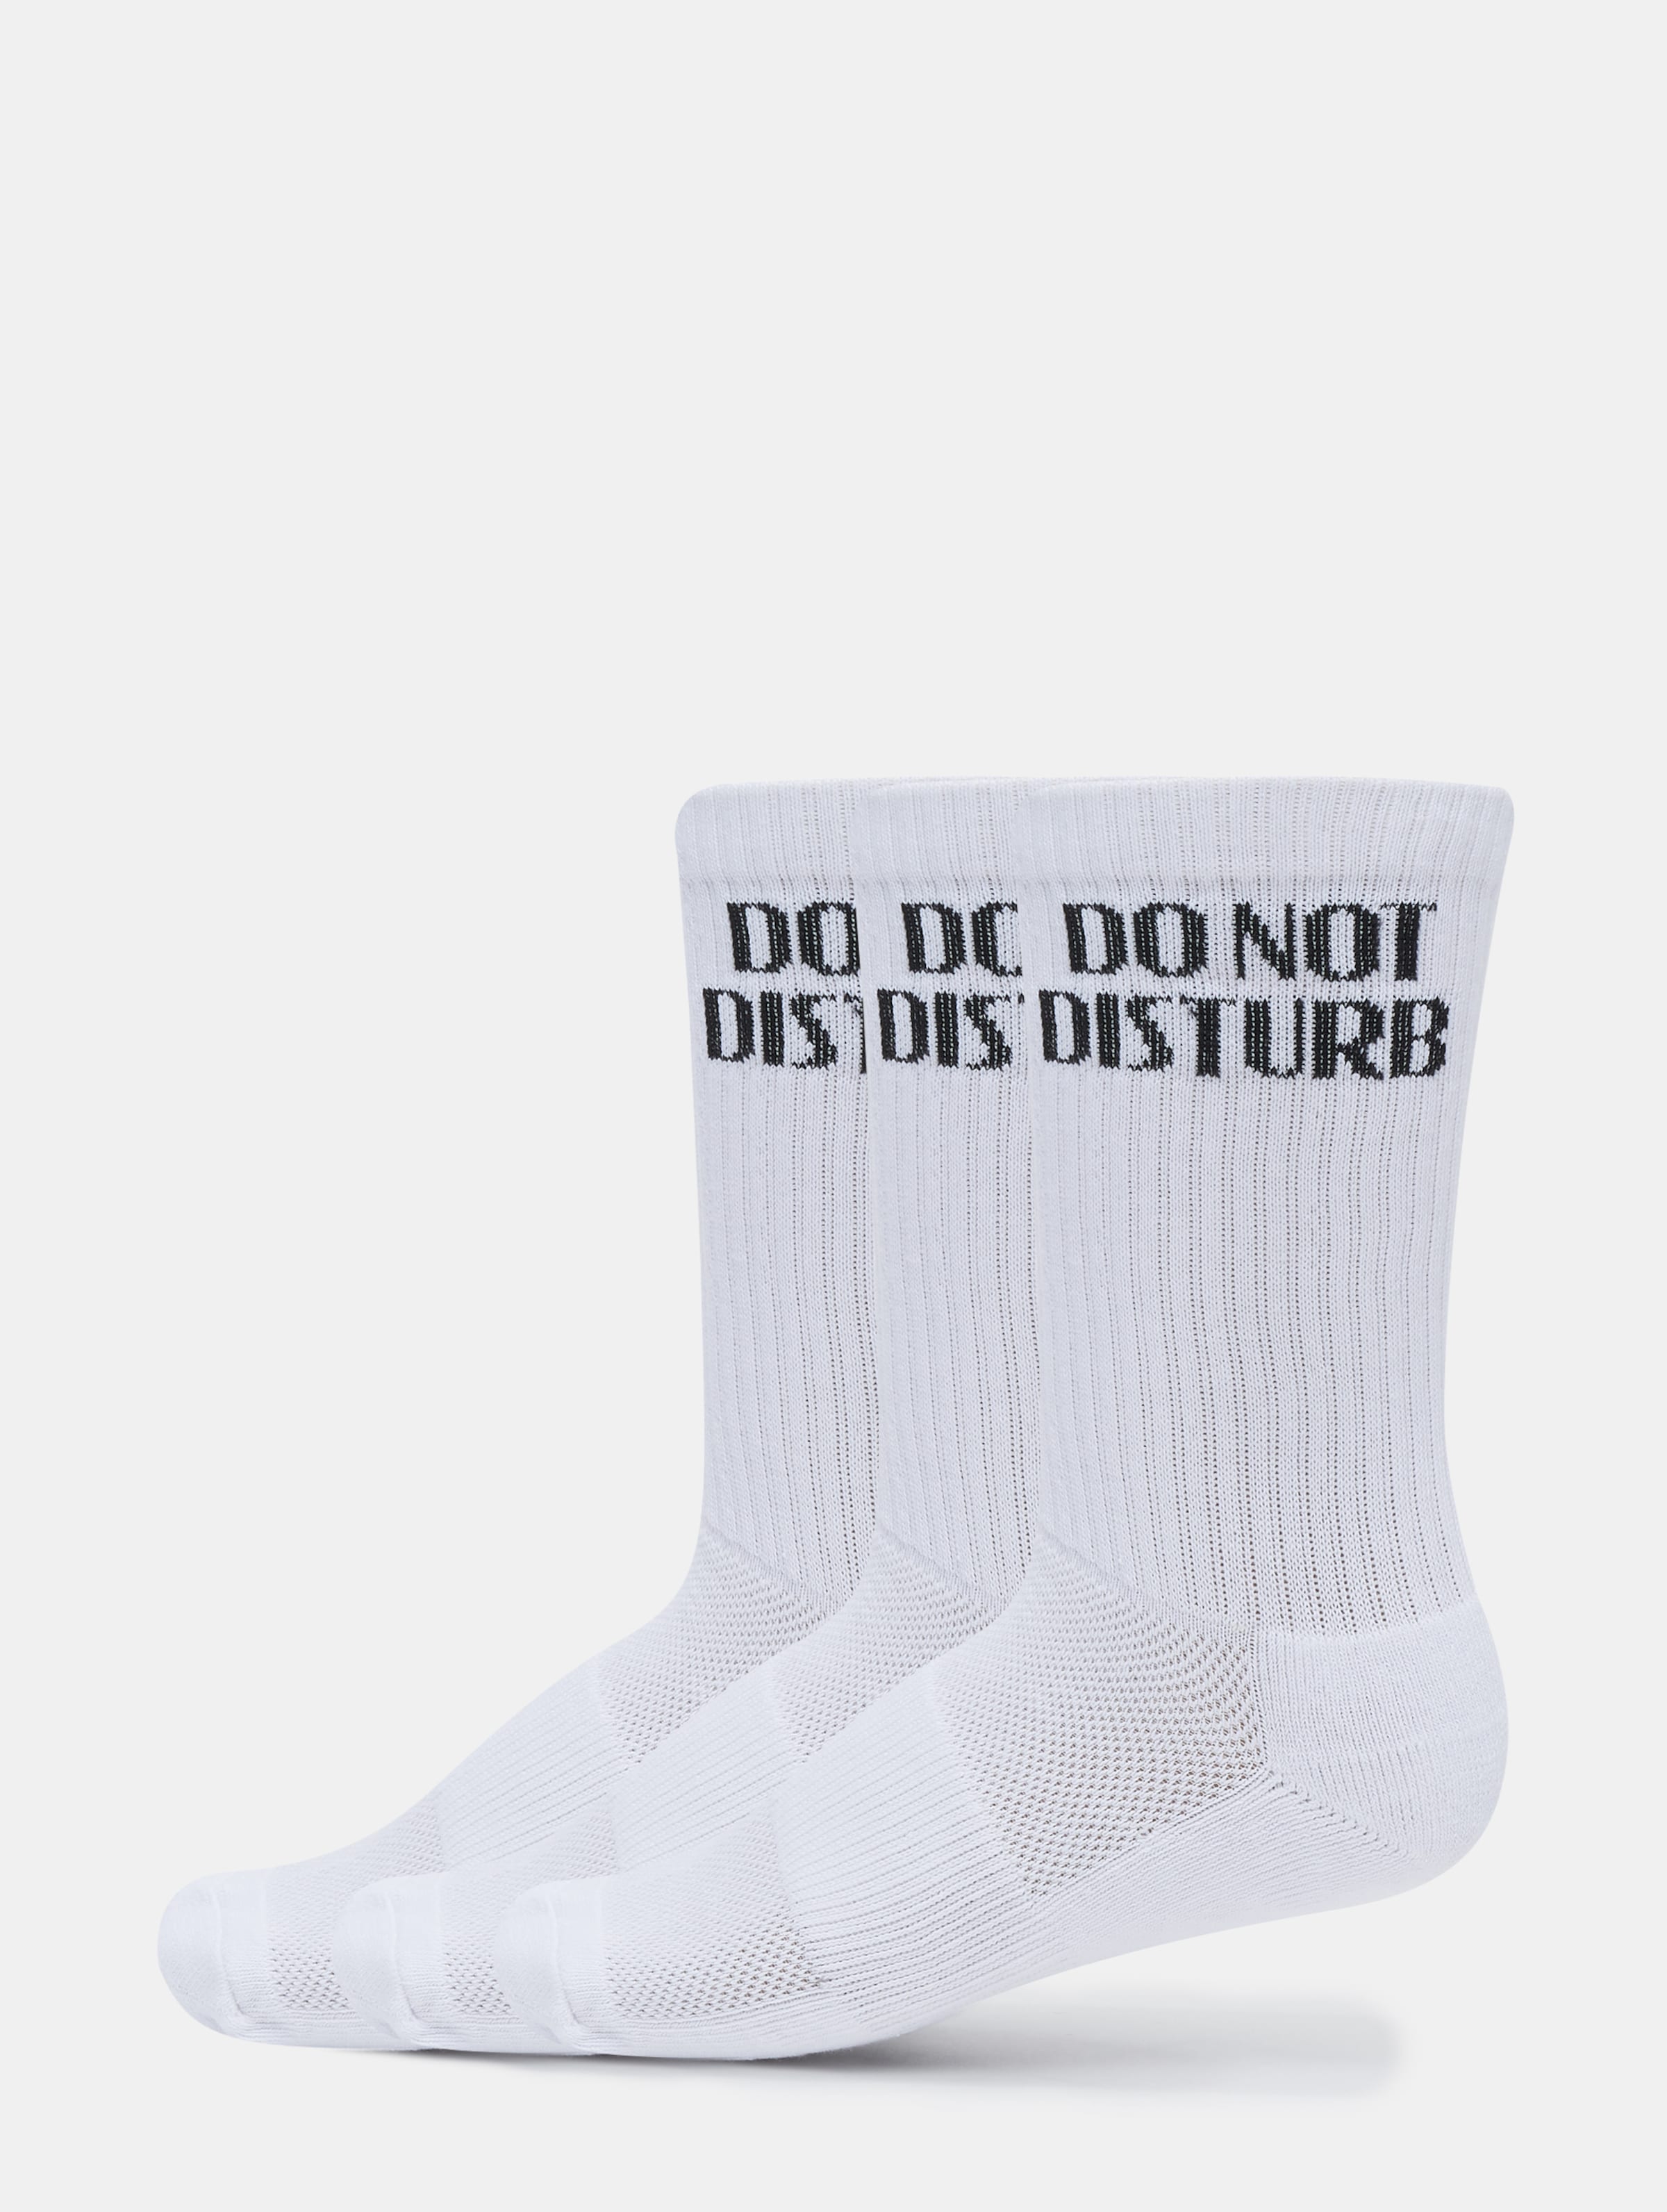 PEGADOR Do not Disturb Socks 3er Pack Frauen,Männer,Unisex op kleur wit, Maat 3942